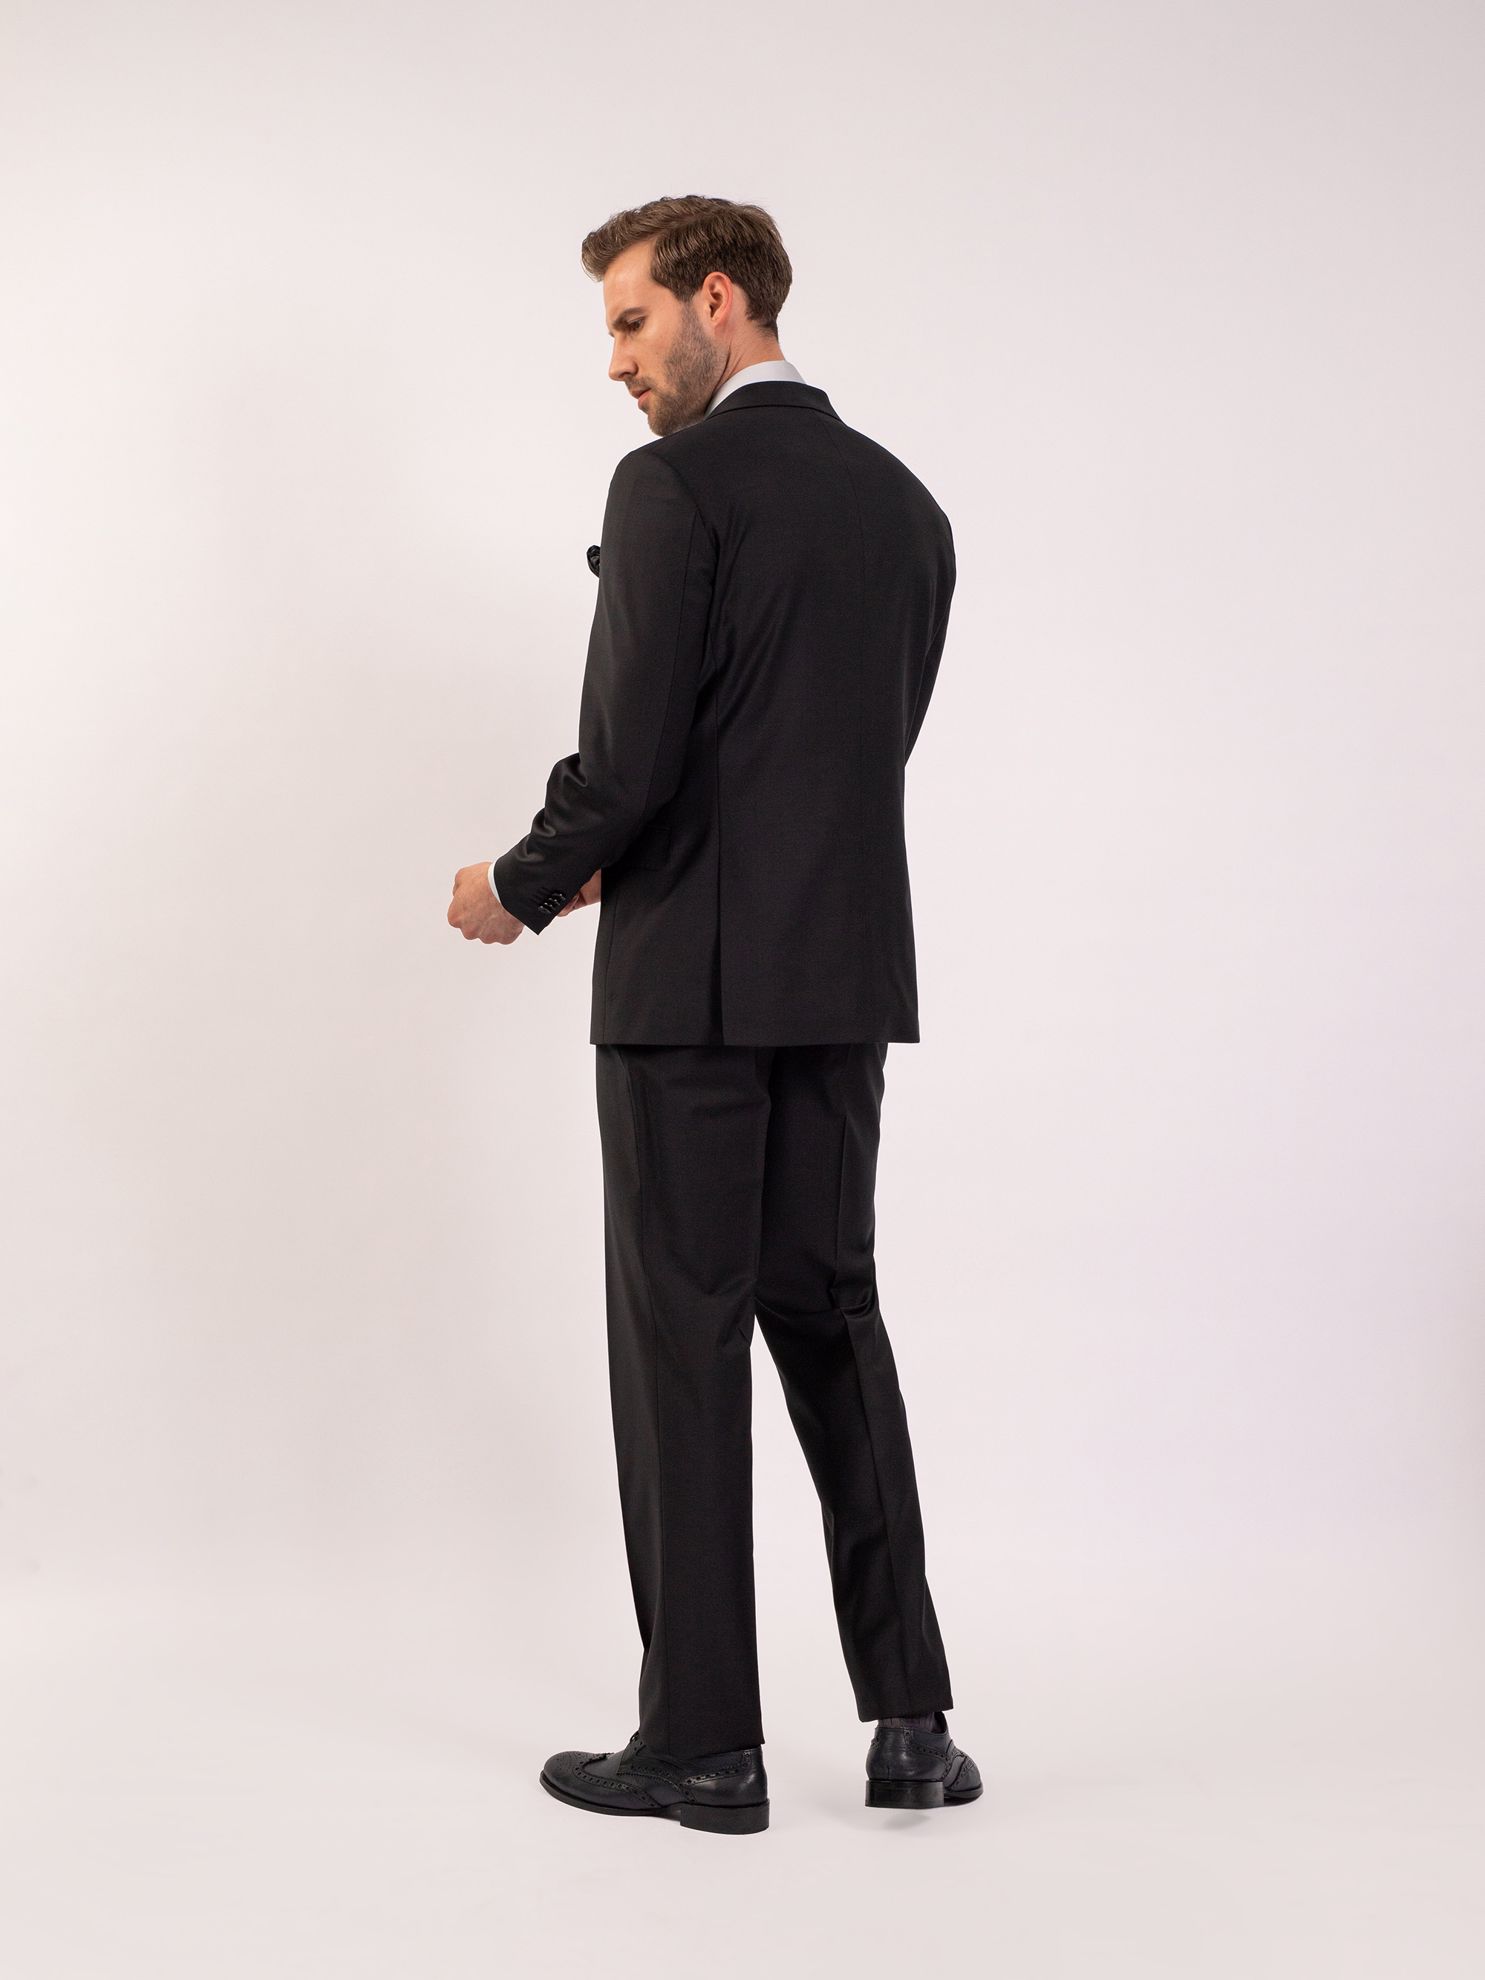 Karaca Erkek 4 Drop Takım Elbise-Siyah. ürün görseli